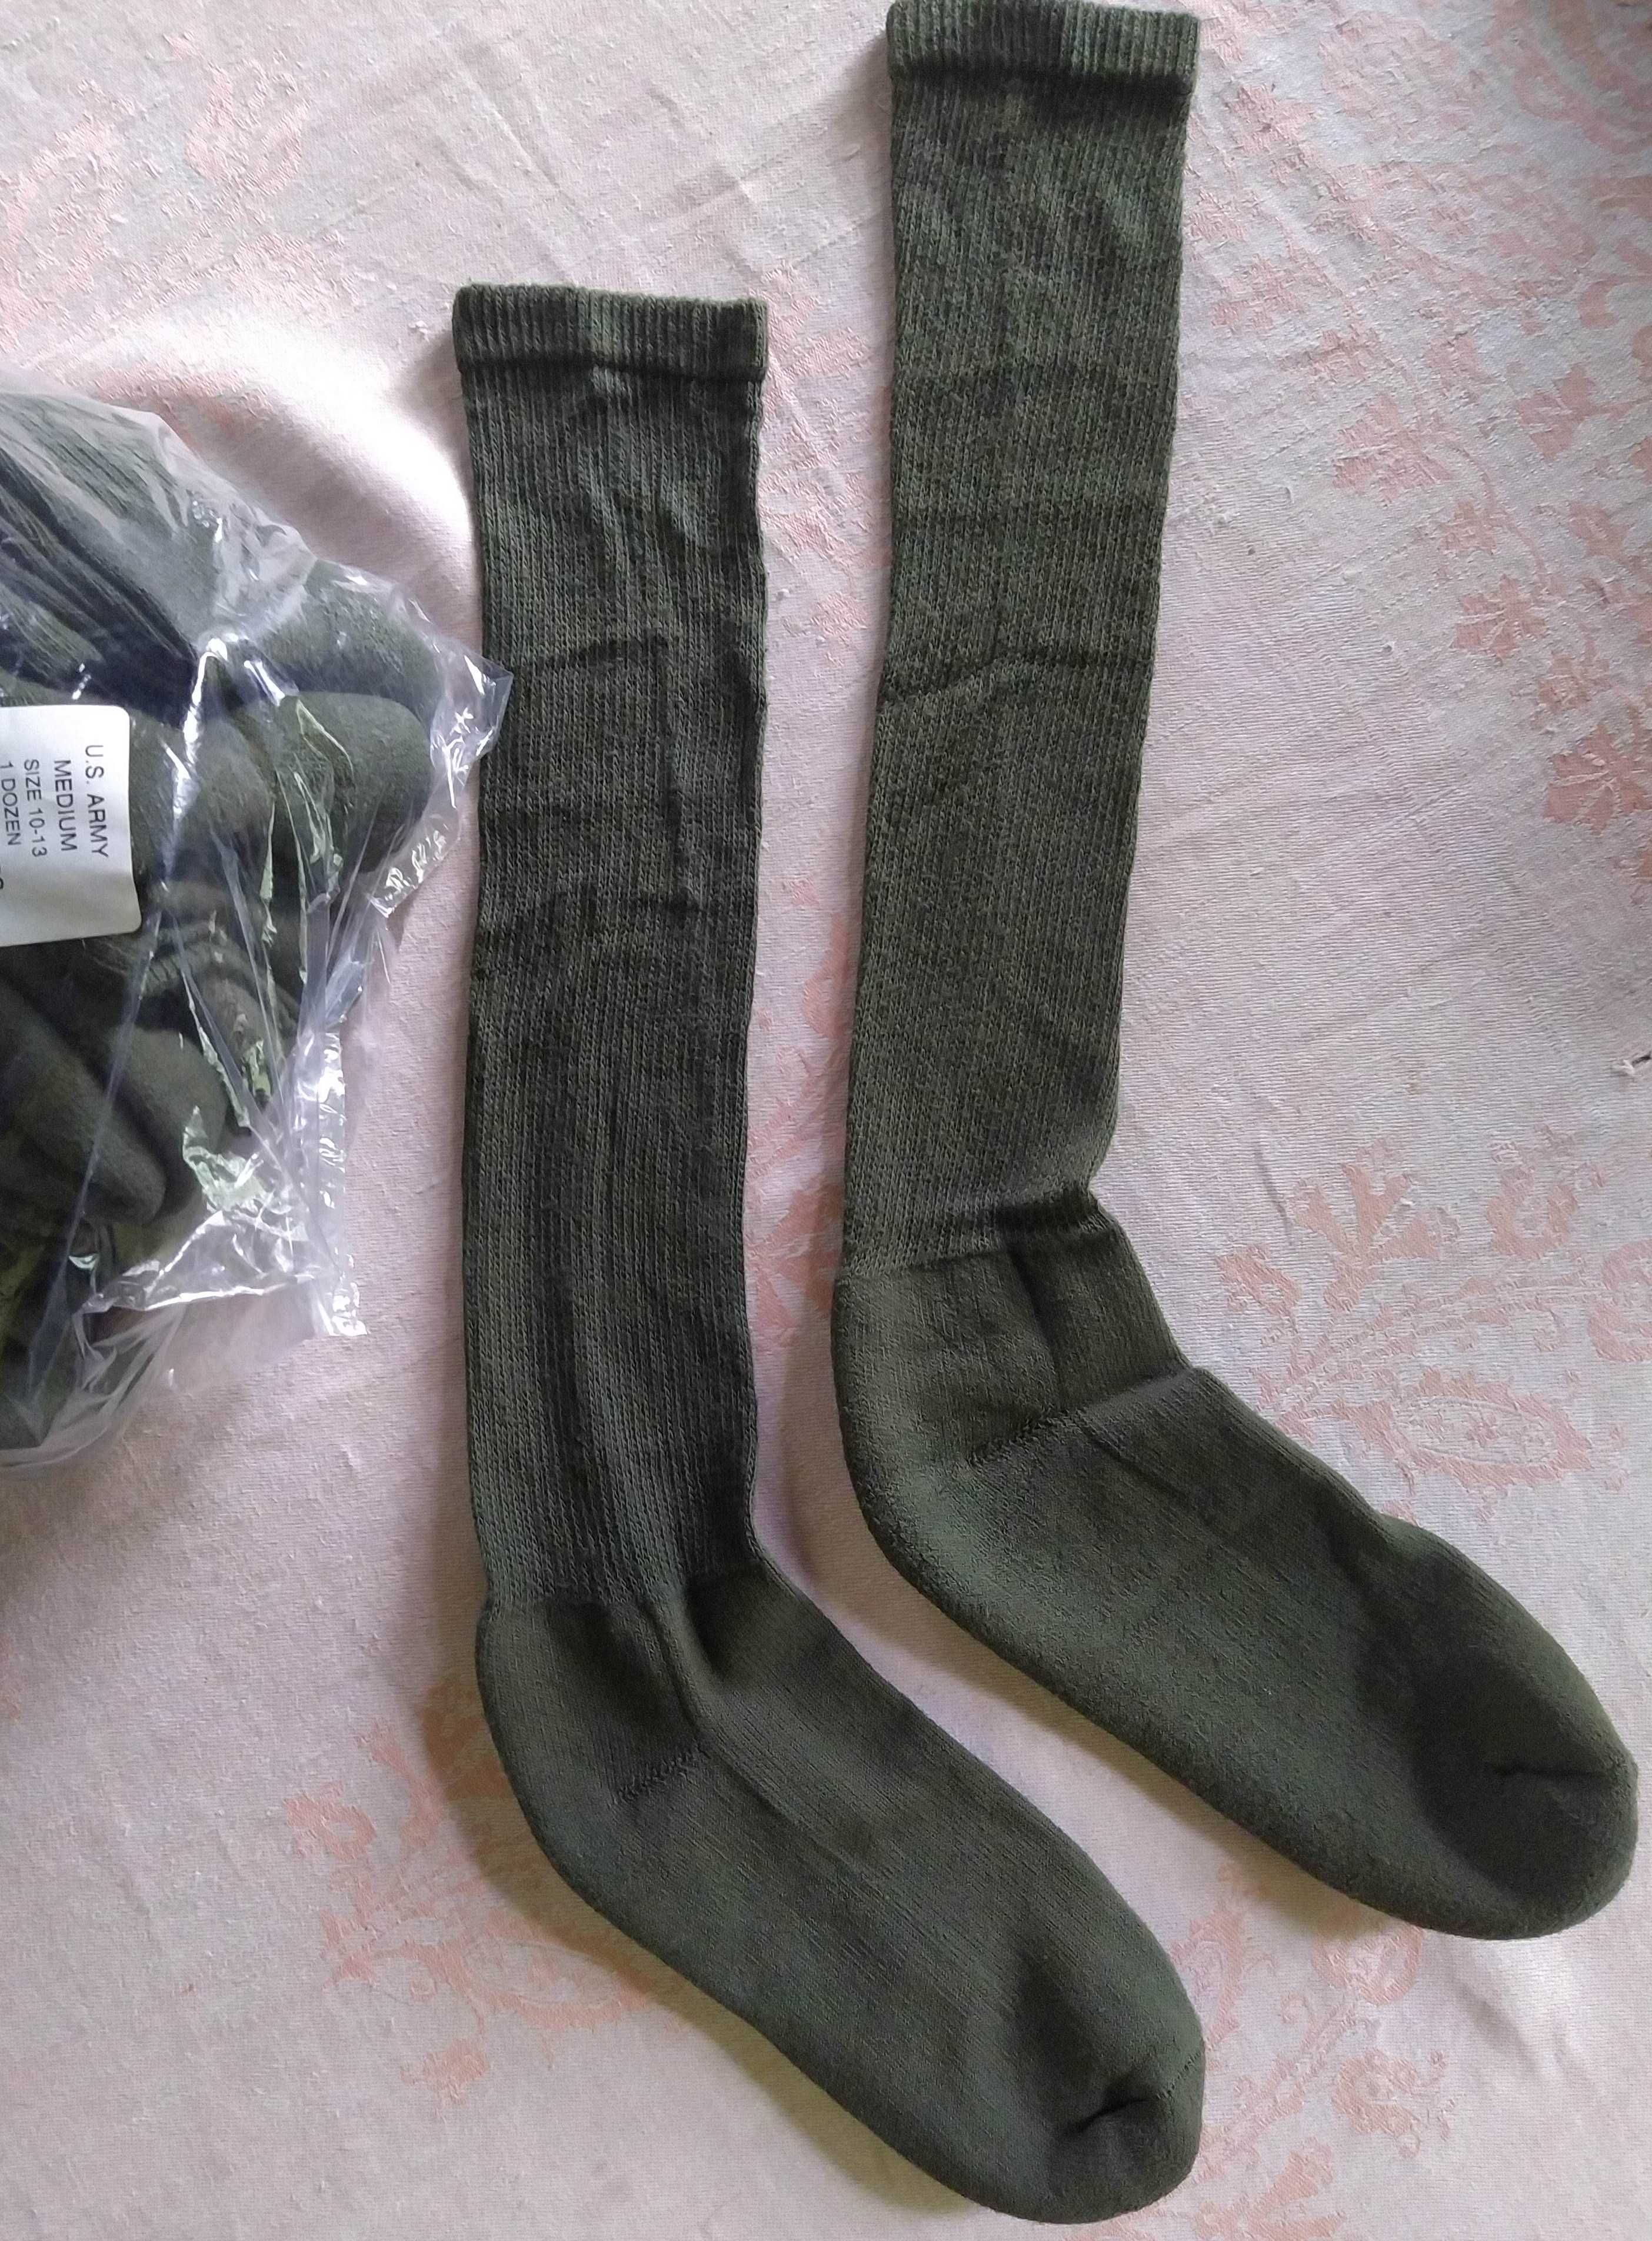 US Army антибактеріальні військові шкарпетки USOA з 2.5% срібної нитки